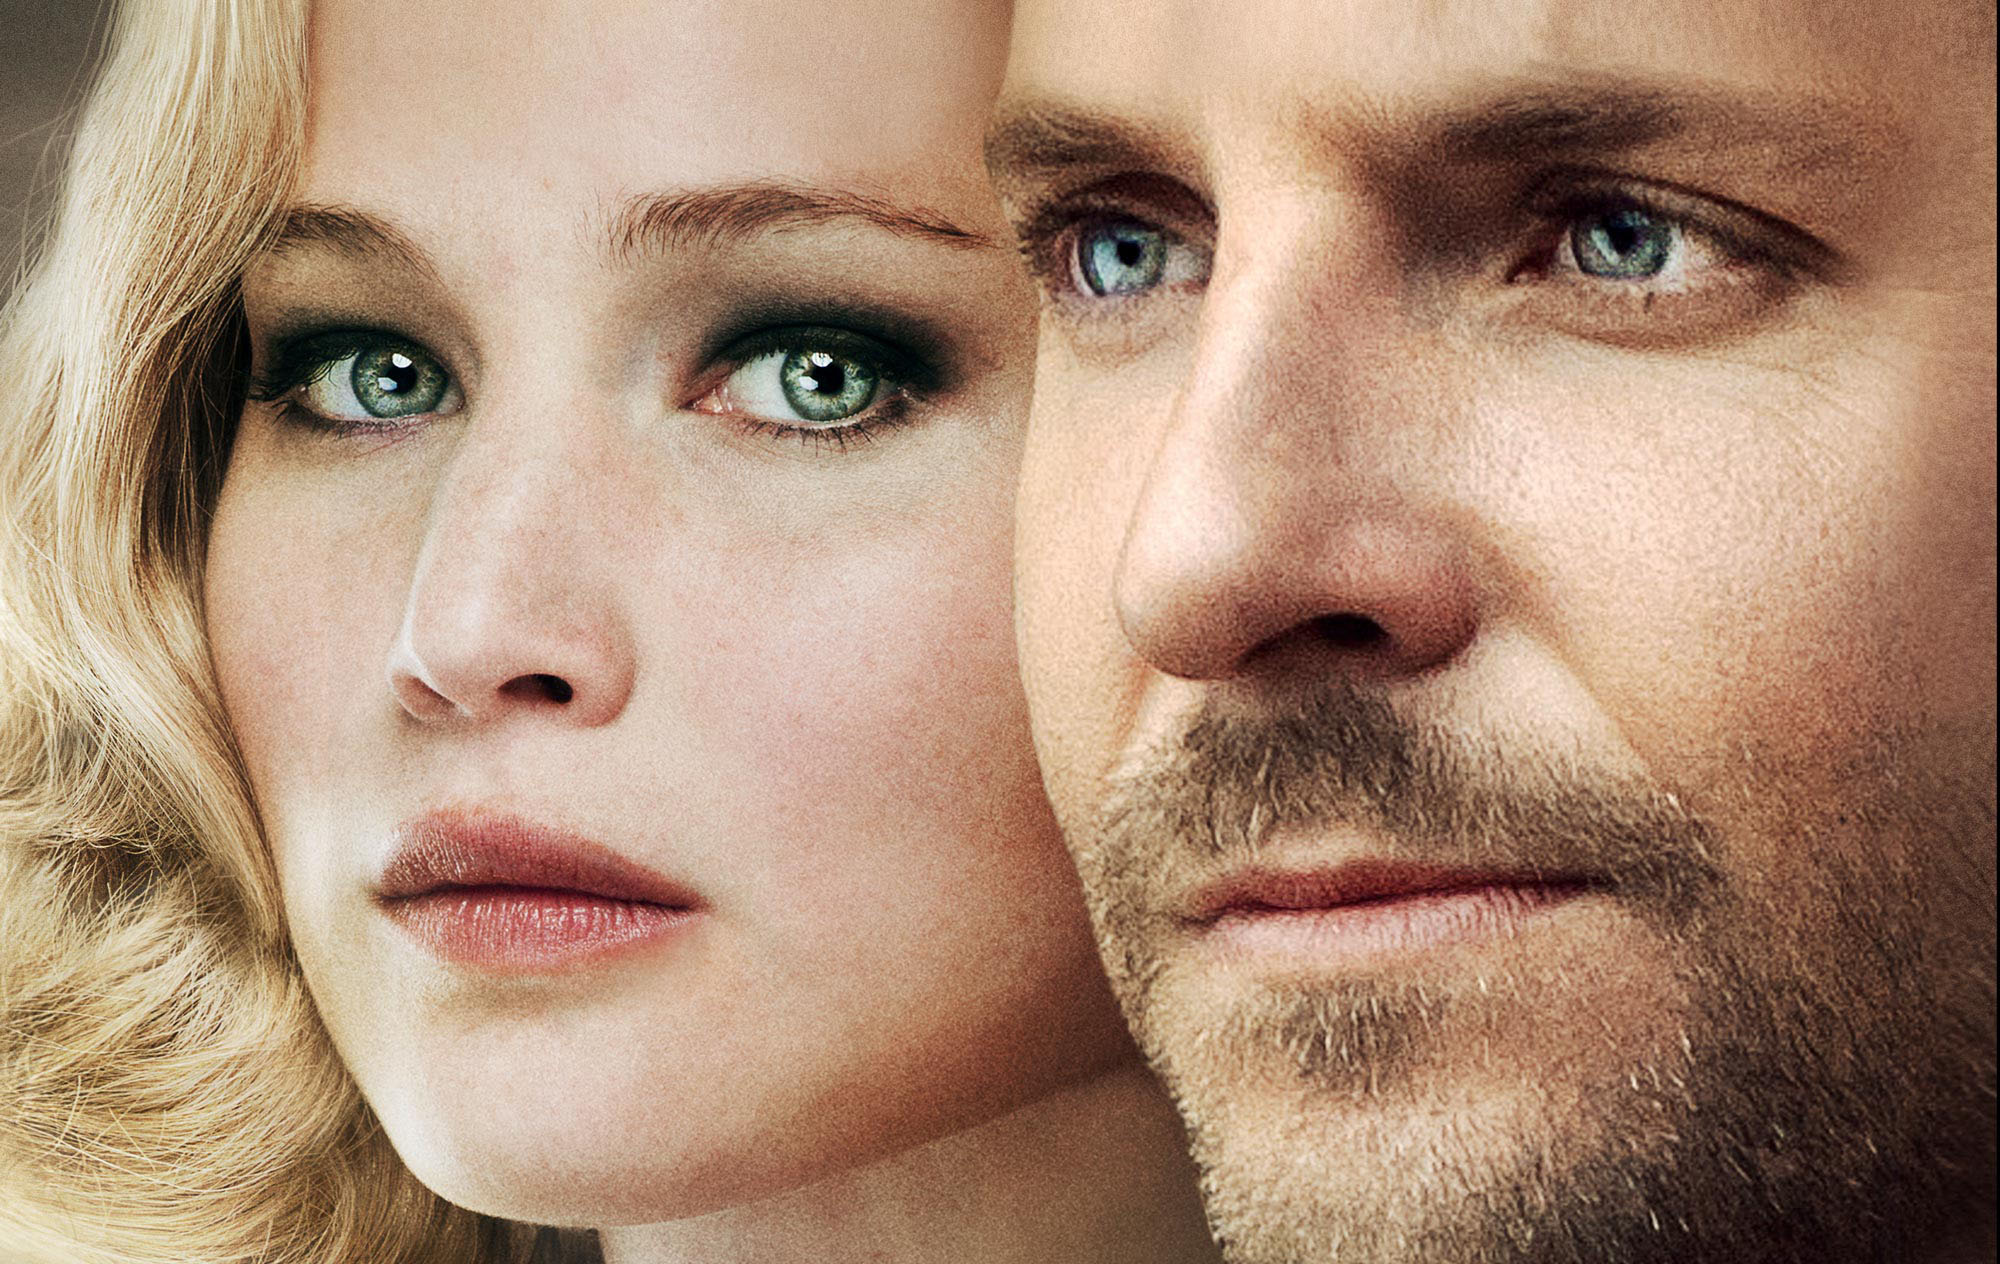 Serena - Bradley Cooper and Jennifer Lawrence